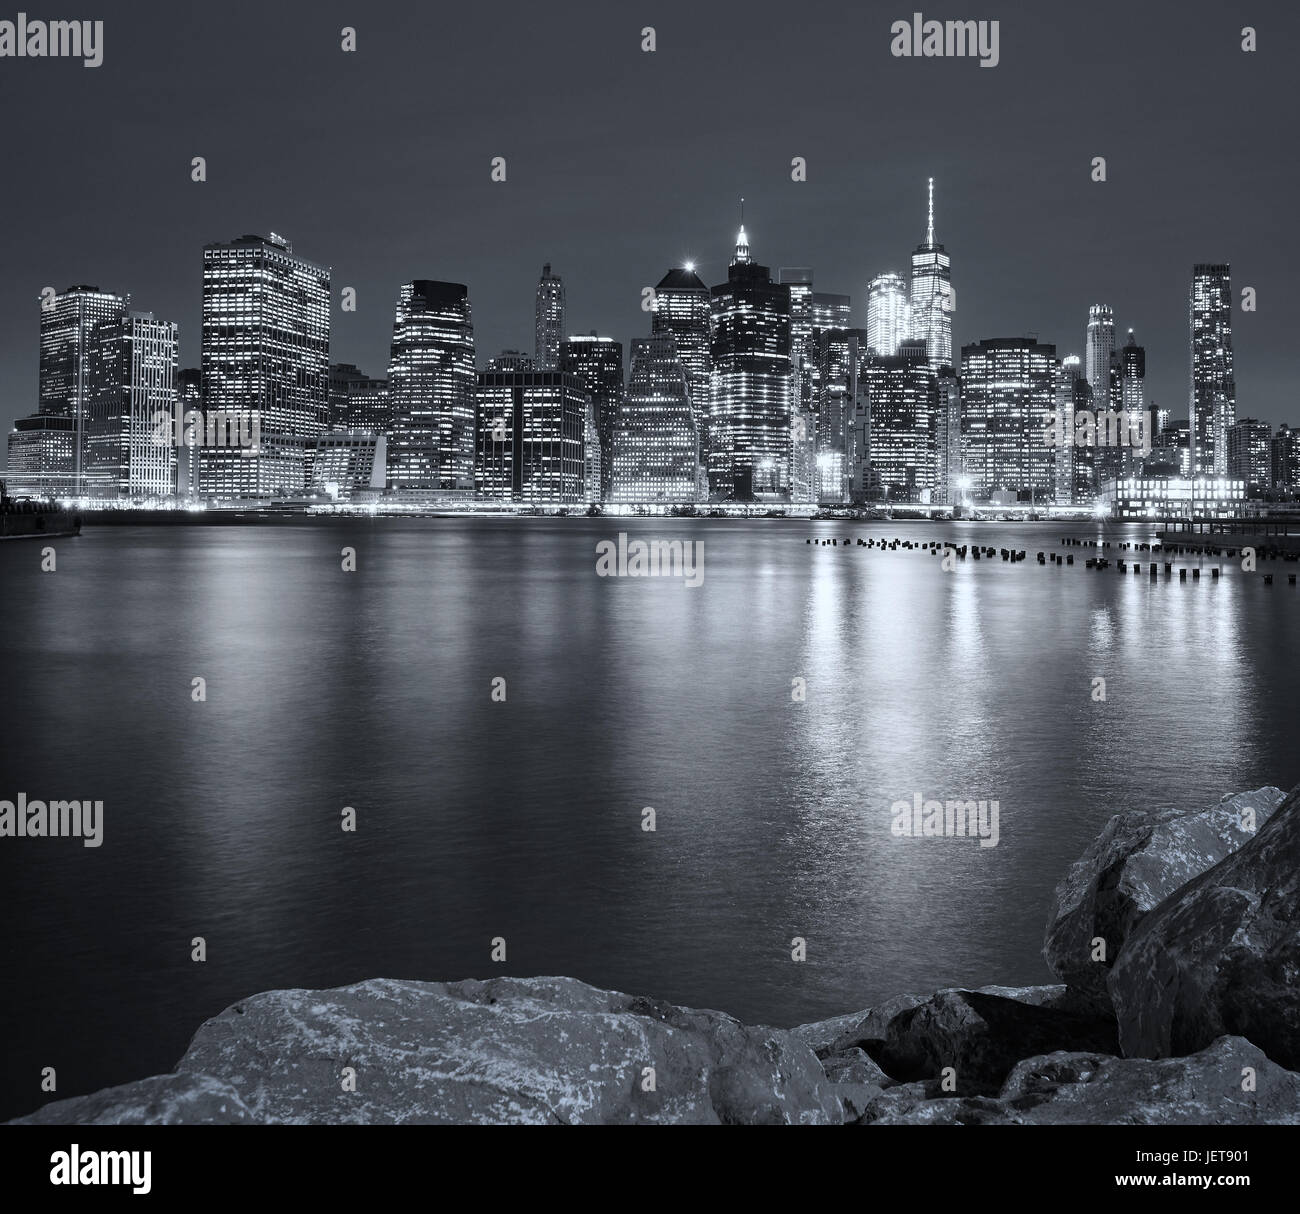 Schwarz / weiß Bild der Nacht-Skyline von New York City, USA. Stockfoto